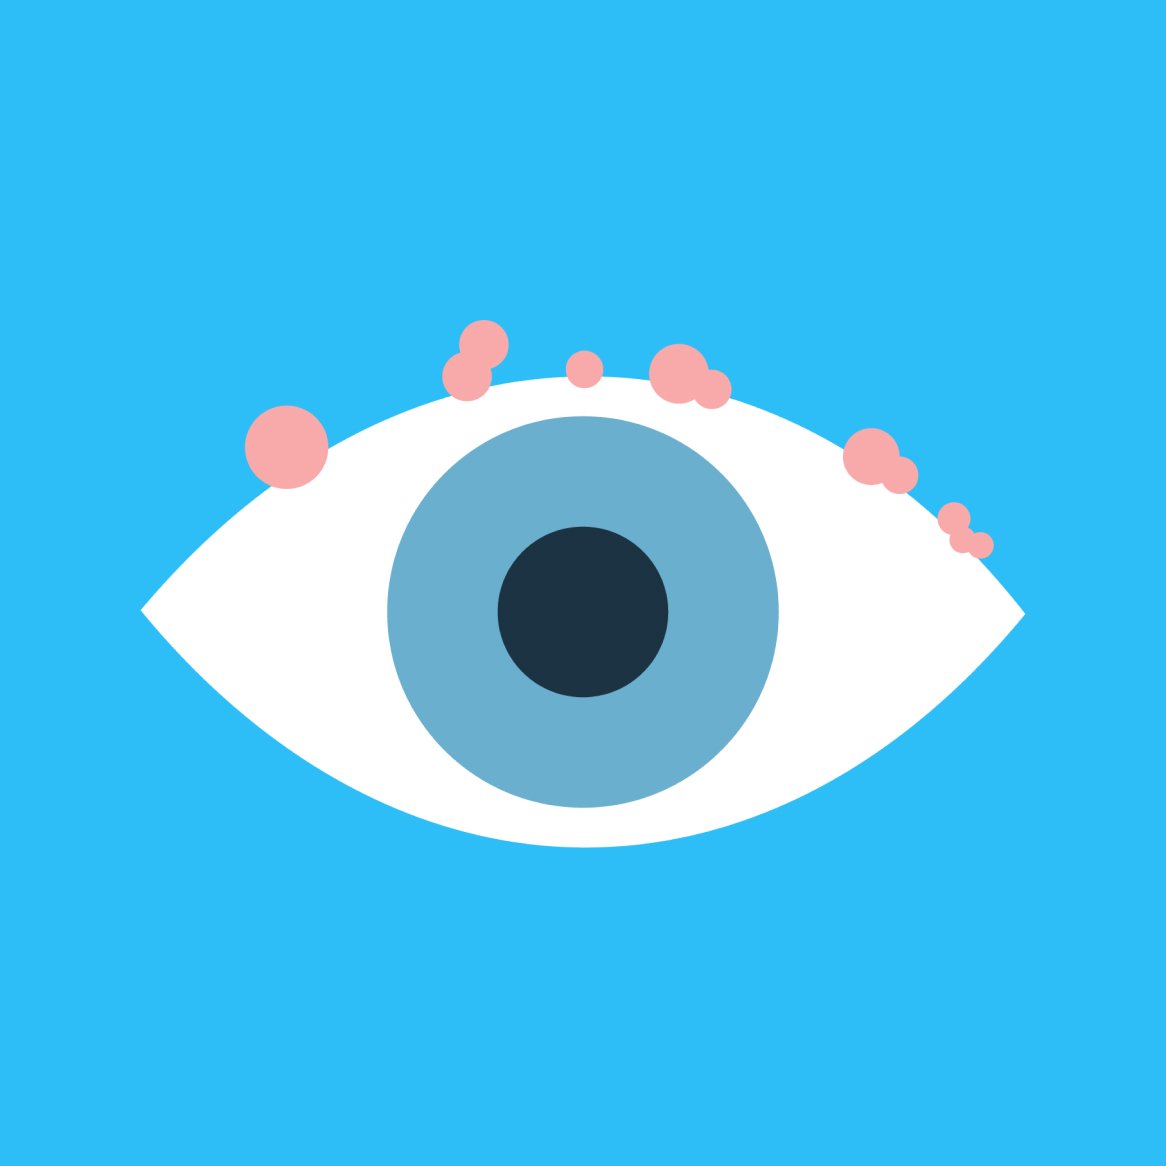 Illustration of an eye with blepharitis